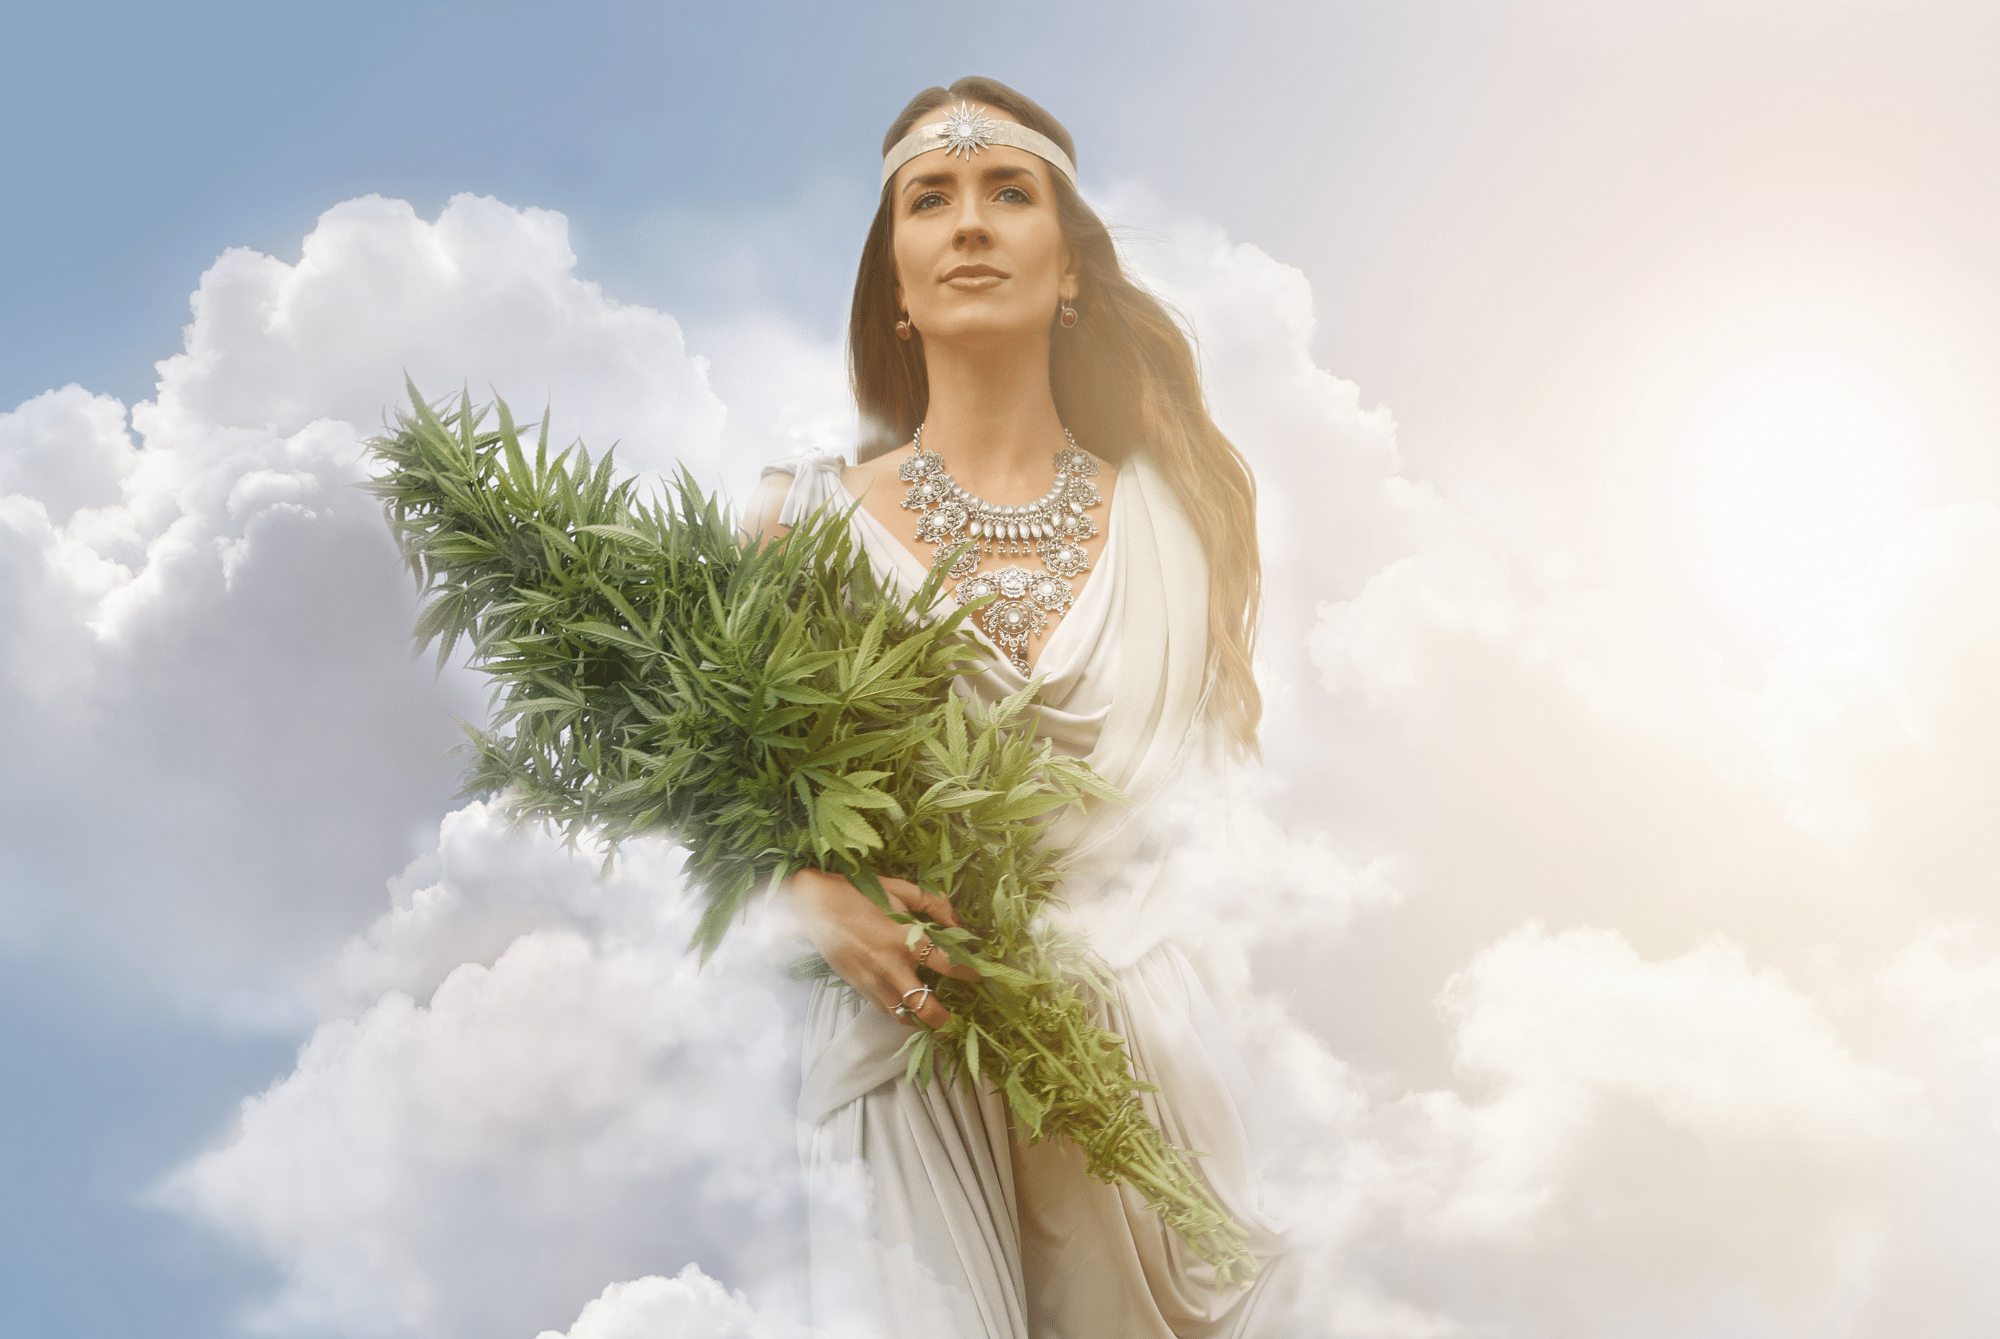 žena s čelenkou v nebesích s rostlinami konopí